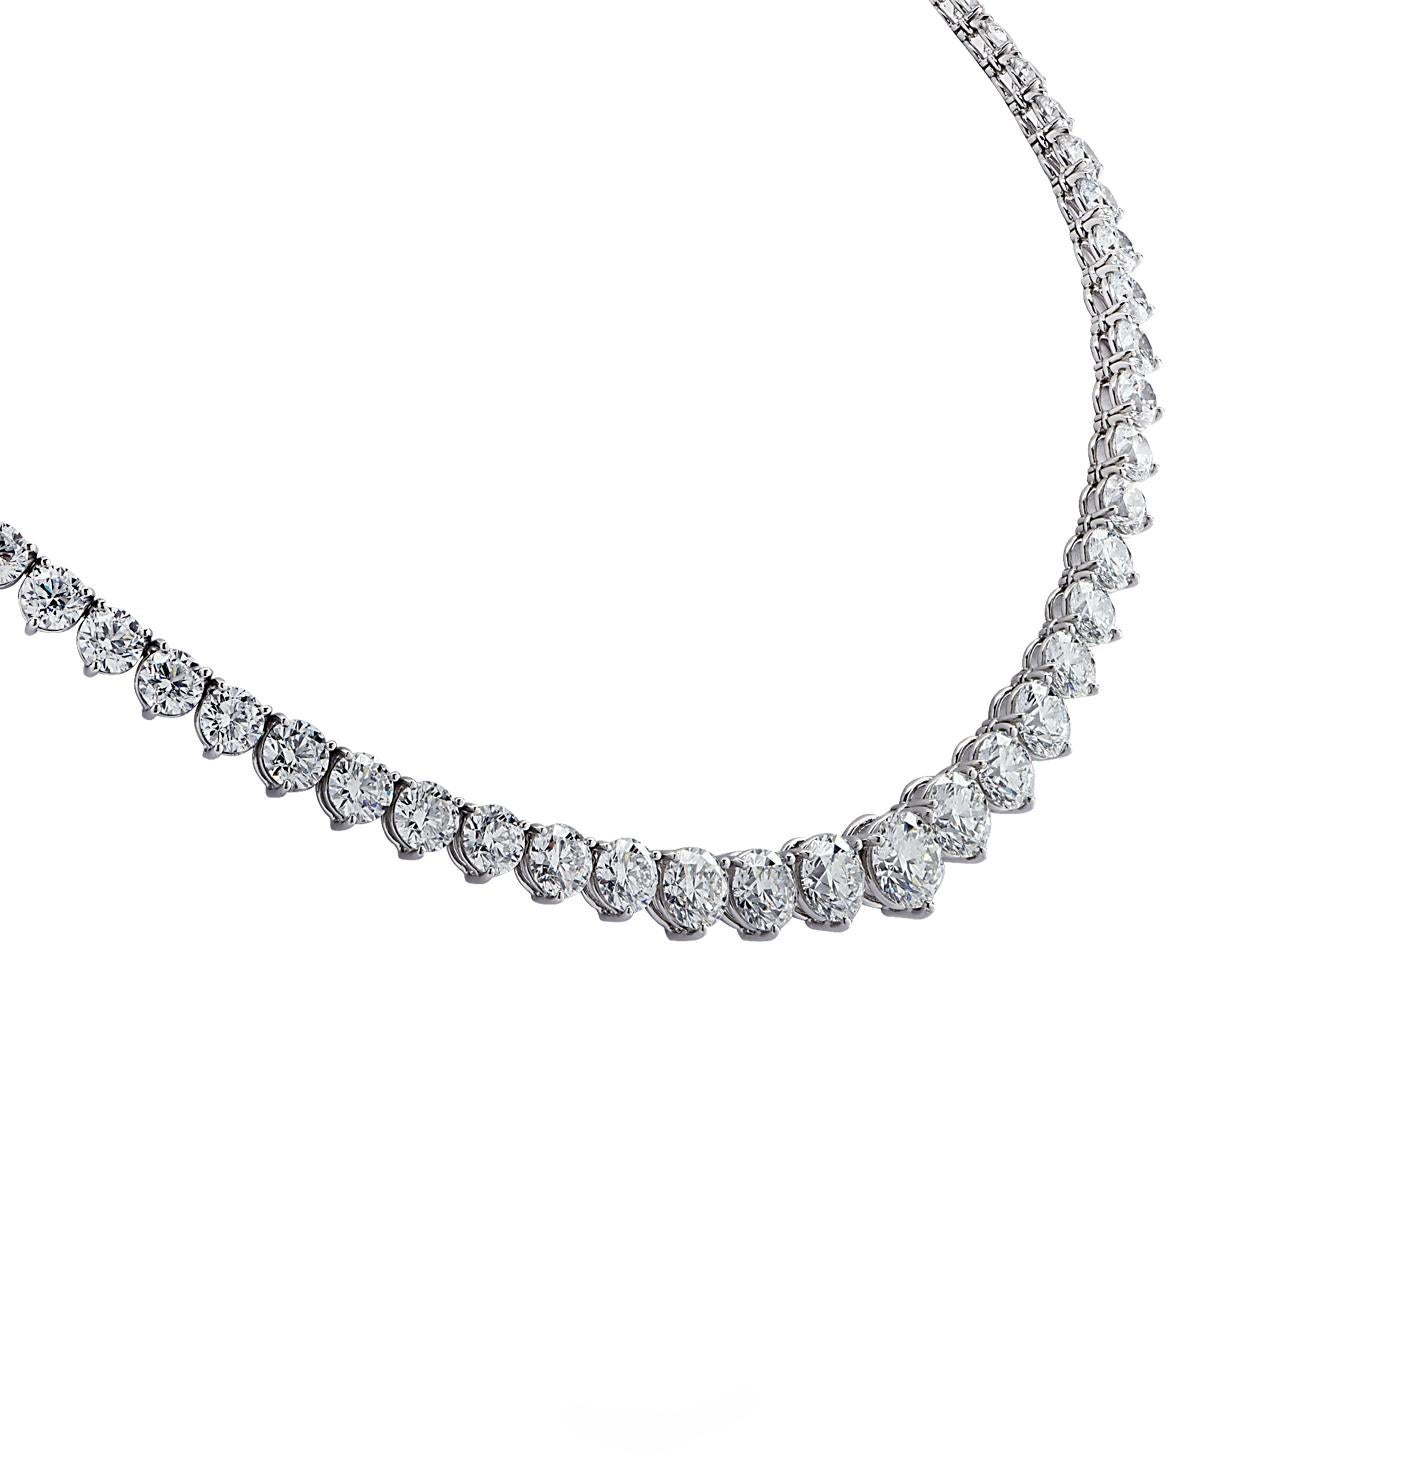 Exquisites Diamantencollier Riviere von Vivid Diamonds aus Platin mit 91 runden Diamanten im Brillantschliff von insgesamt 32 Karat, Farbe G-H, Reinheit VS1-SI2. Neun der größten Diamanten sind vom GIA zertifiziert. Die Diamanten sind in ein